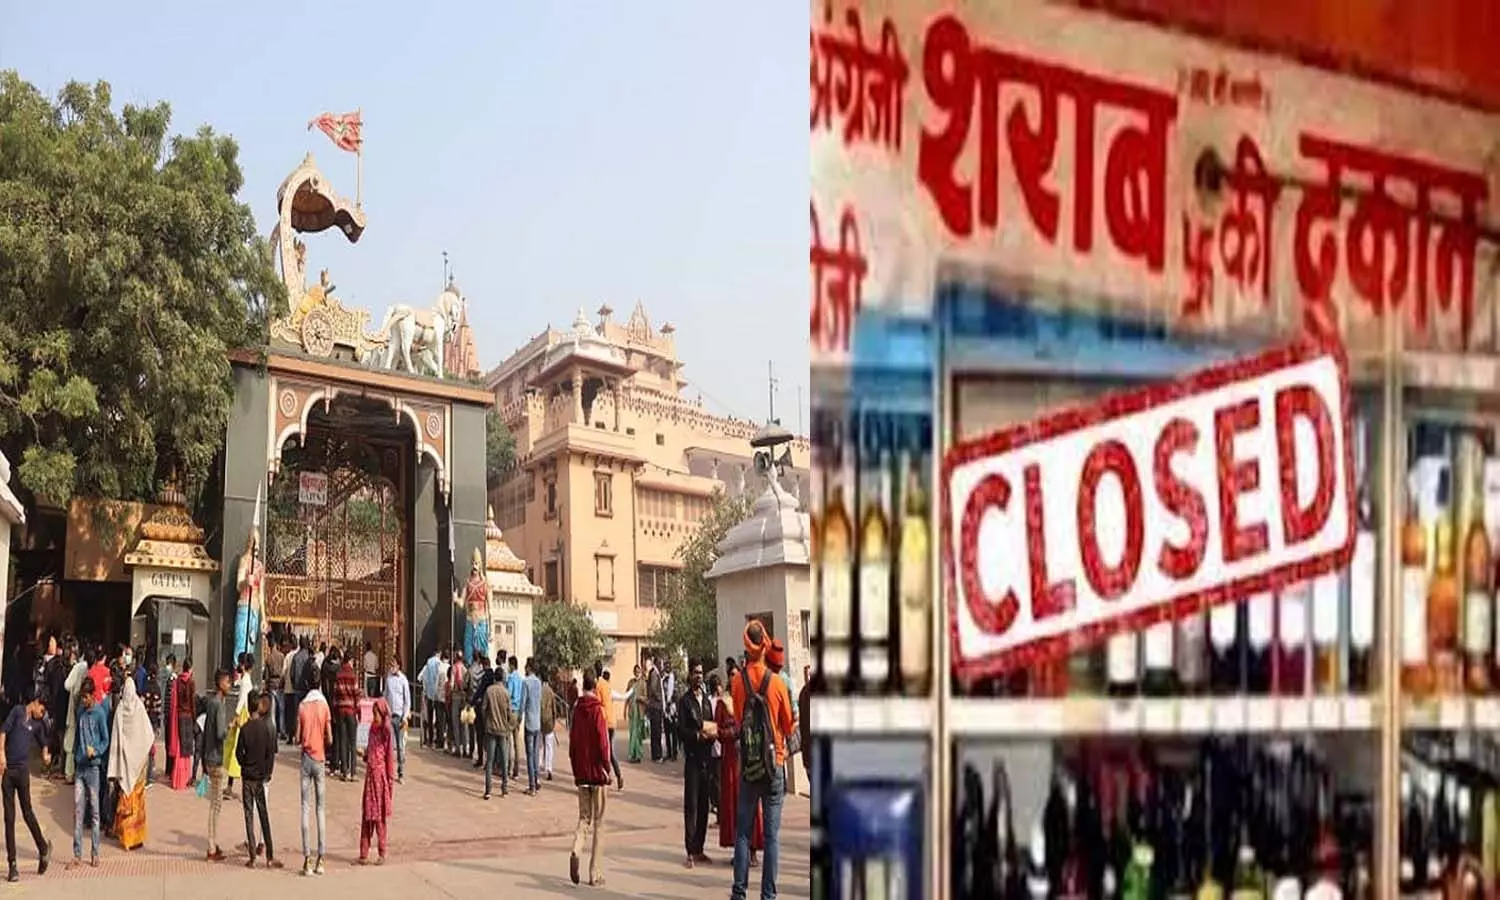 Liquor shops closed within 10 km radius of Shri Krishnas birthplace in Mathura